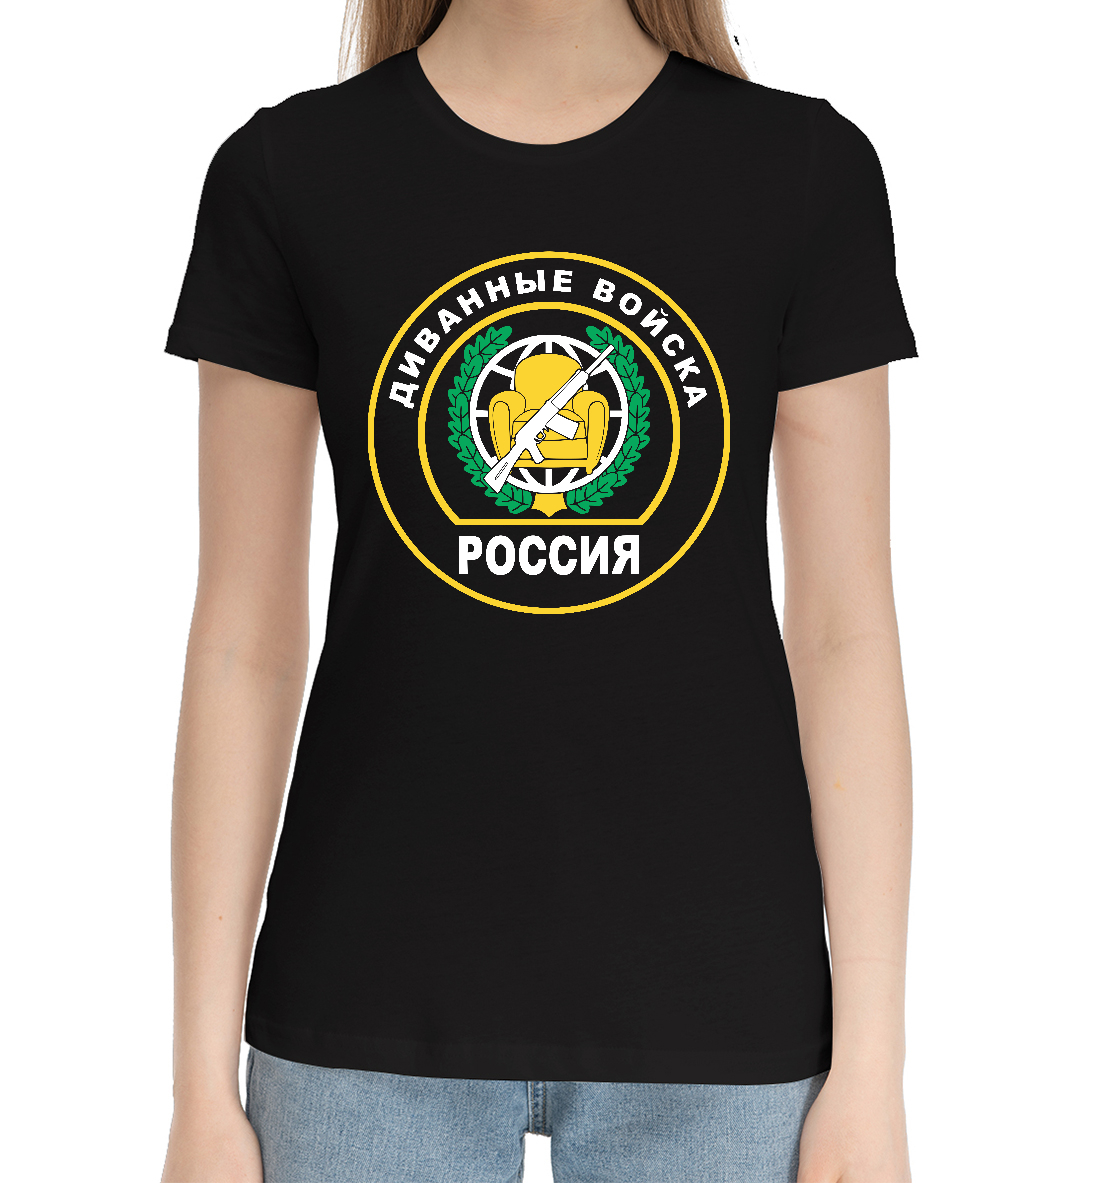 Женская Хлопковая футболка с принтом Диванные Войска (РОССИЯ), артикул 23F-129578-hfu-1mp